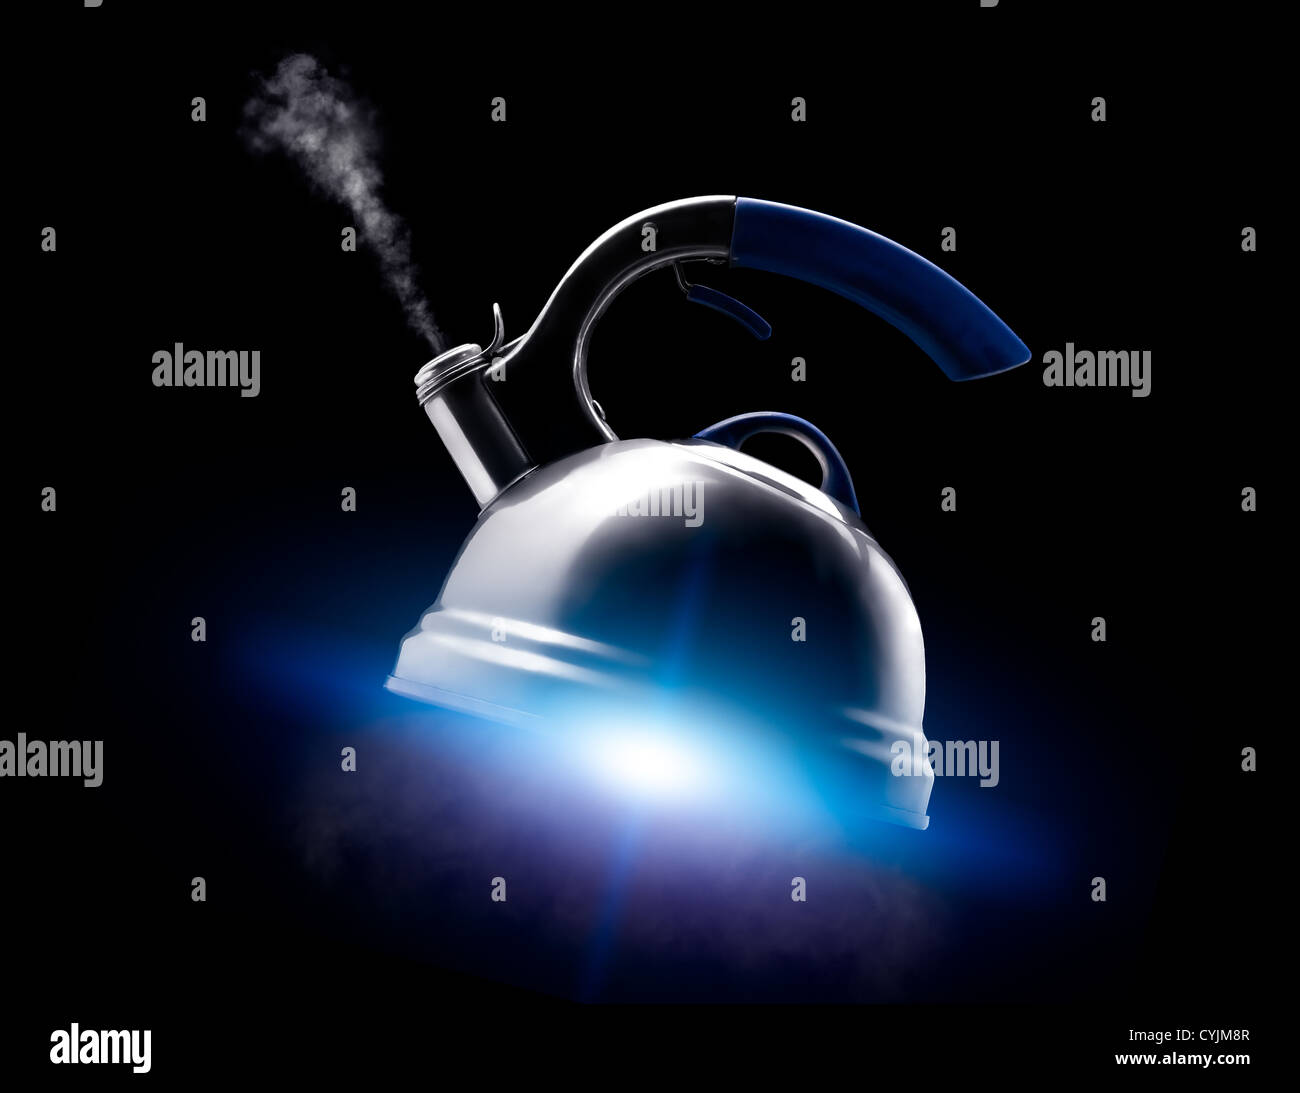 Teekanne mit kochendem Wasser auf schwarzem Hintergrund. Blaue Leuchten wie aus dem Raumschiff Motor unter dem Kessel. Stockfoto